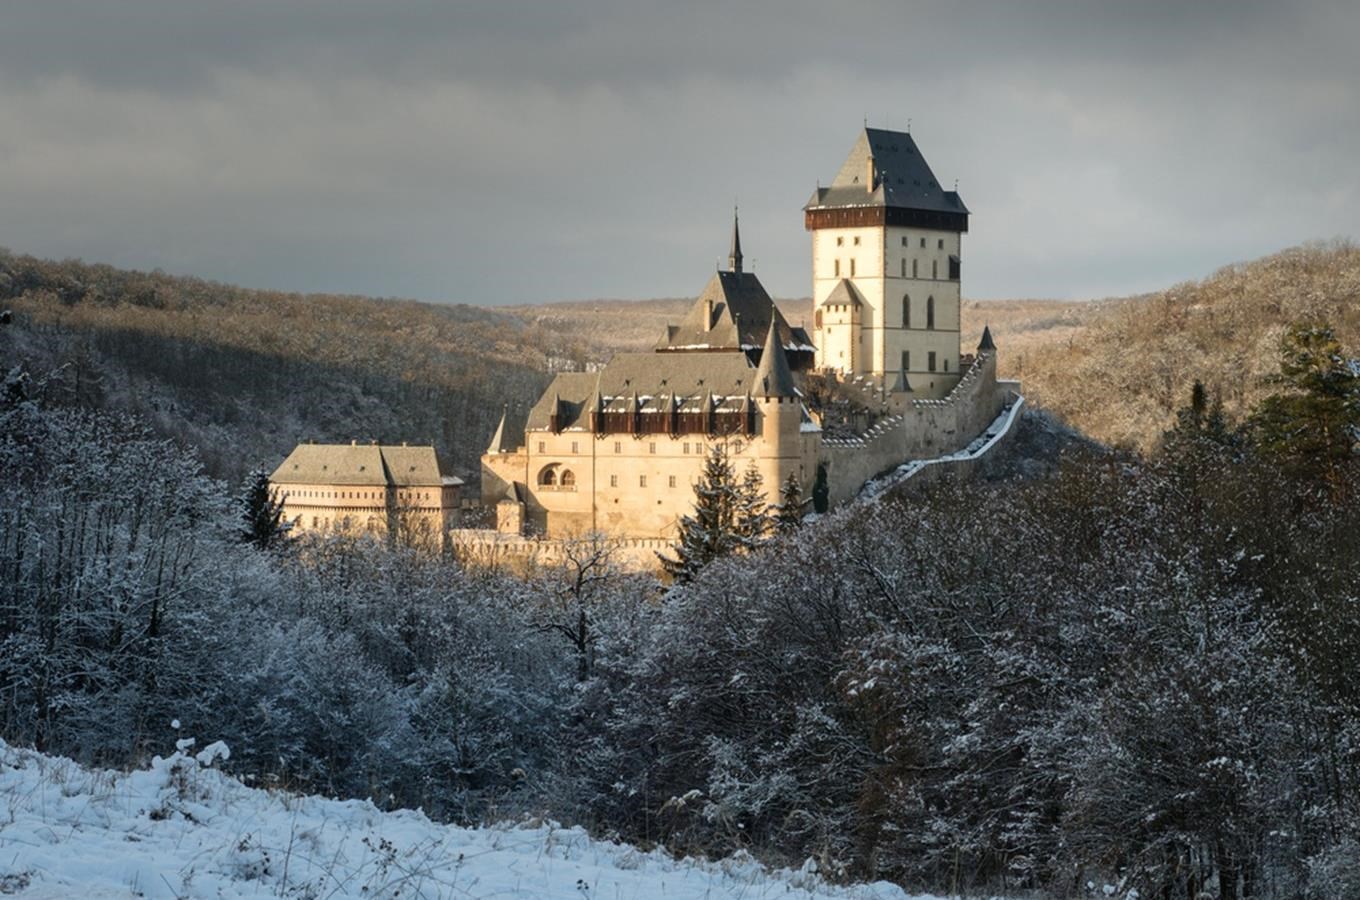 Hrad Karlštejn zůstává přes zimu otevřený – Kudy z nudy